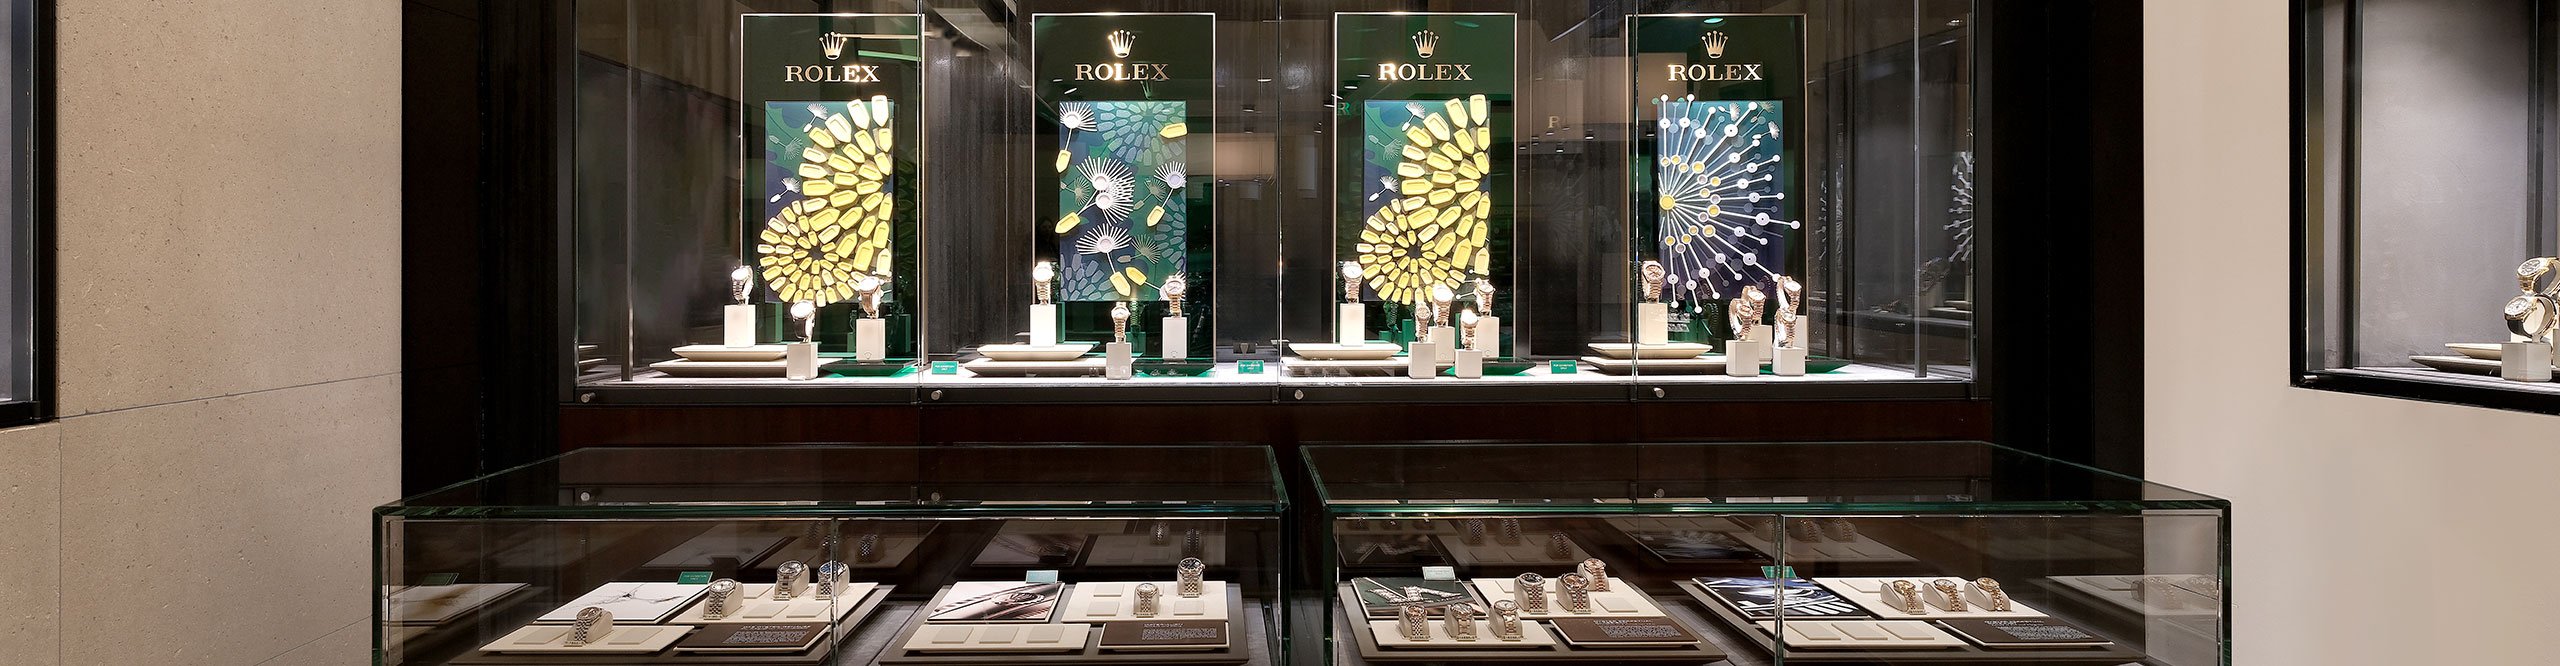 Rolex Watches at Juwelier Wagner in Vienna